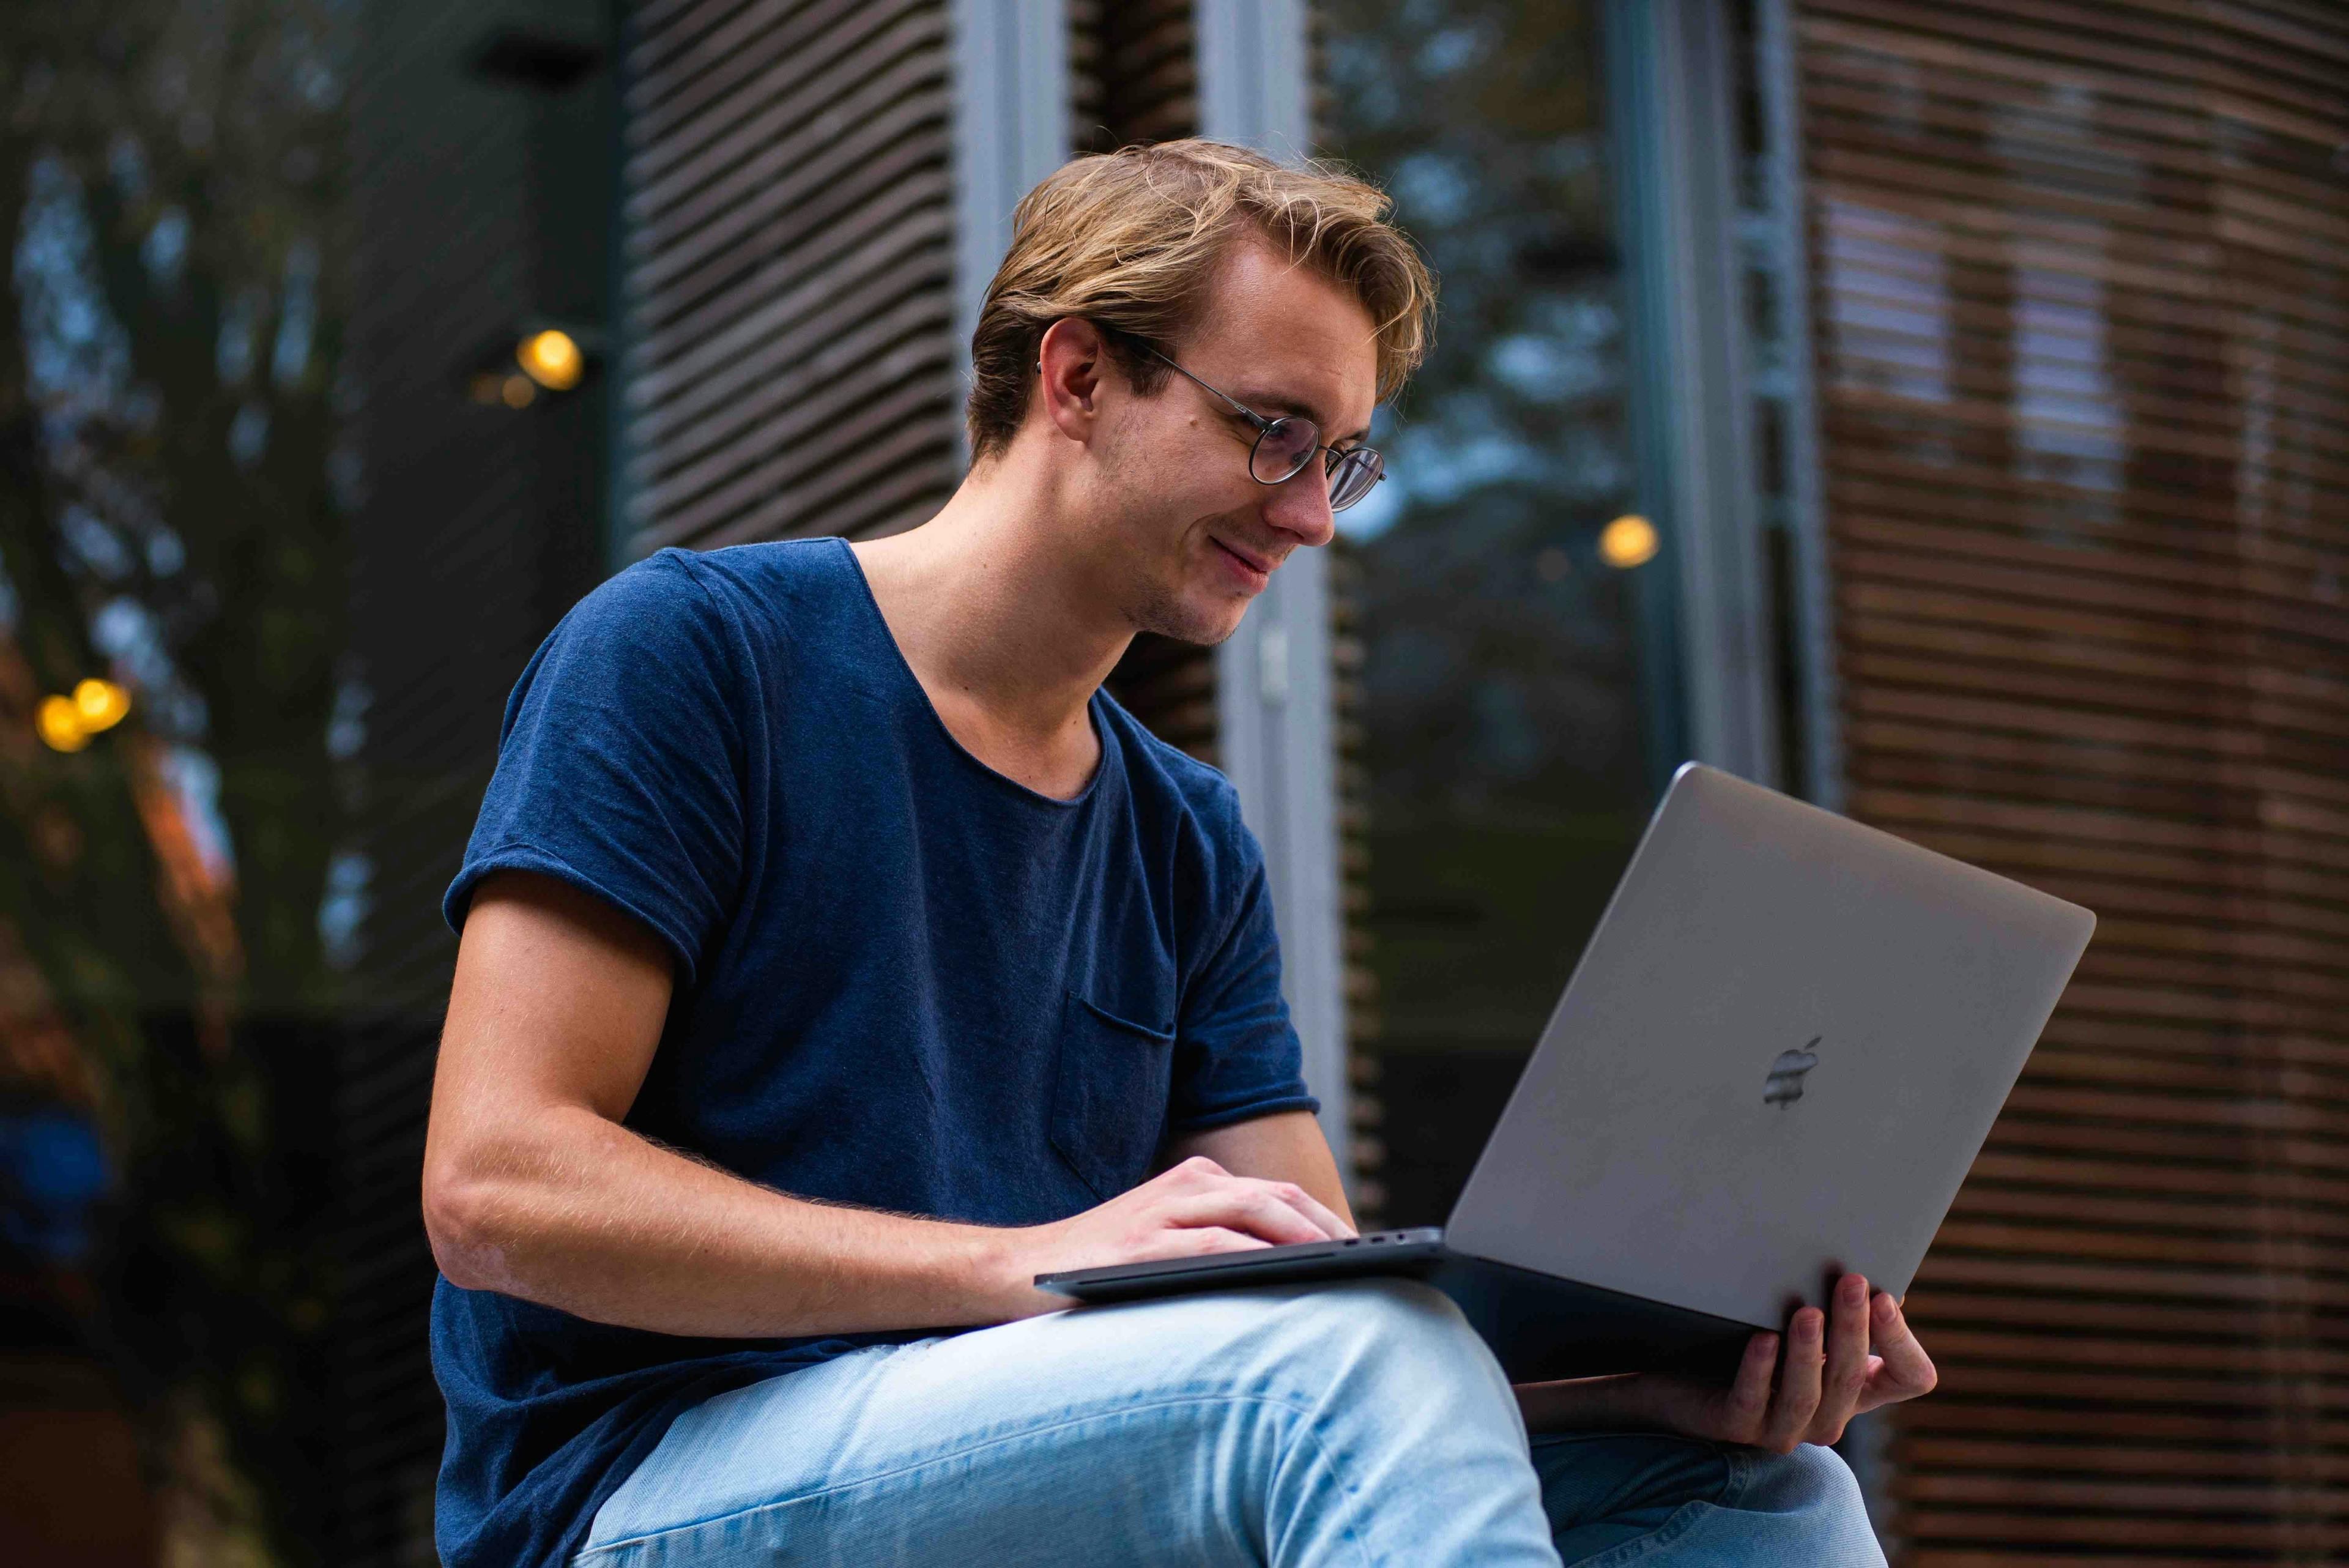 Man zittend glimlachend kijkend naar laptop op zijn schoot buiten